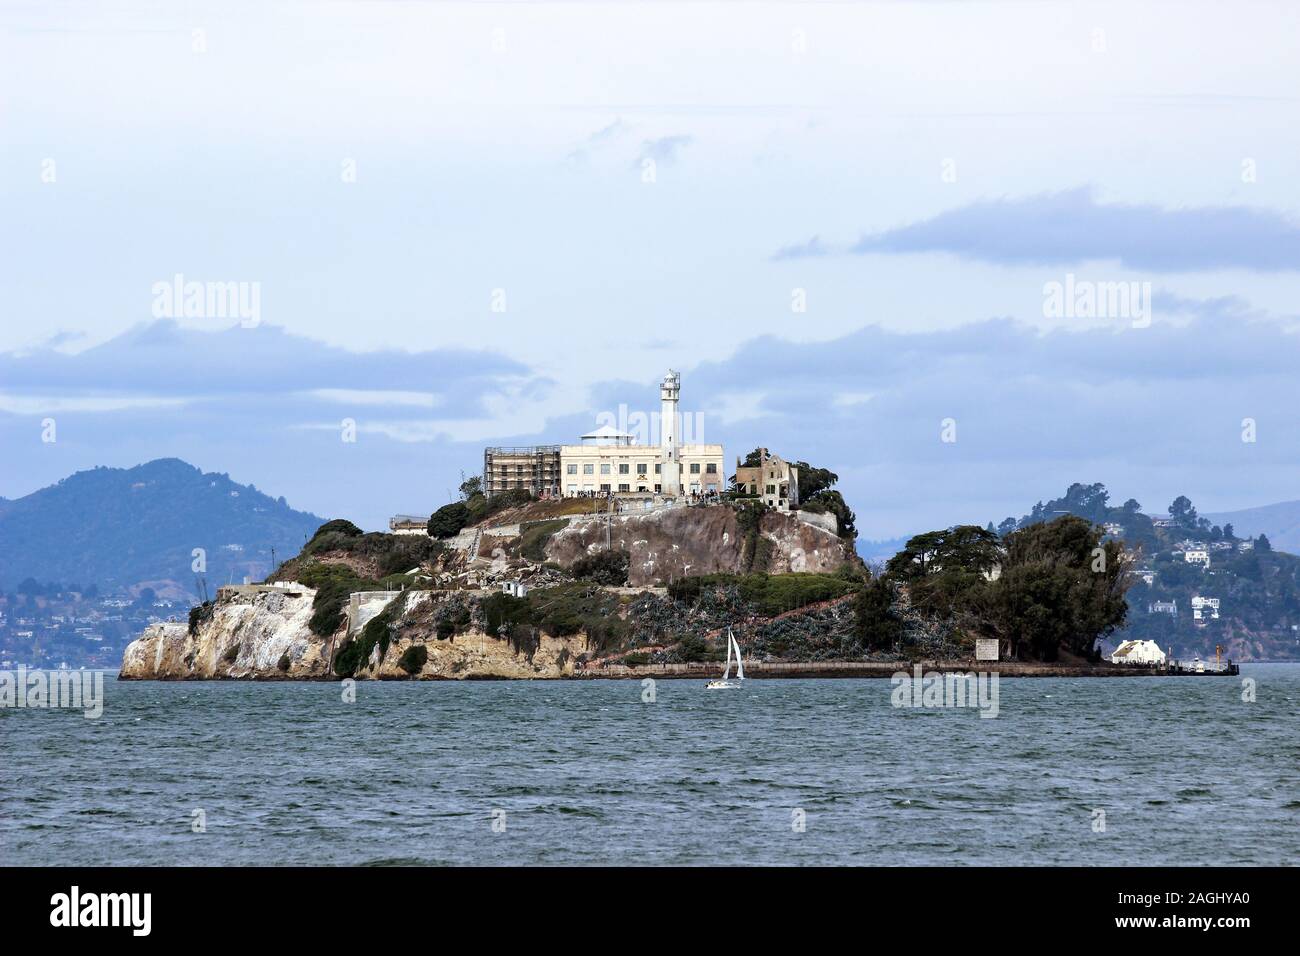 La prigione di Alcatraz isola nella baia di San Francisco, Stati Uniti d'America Foto Stock